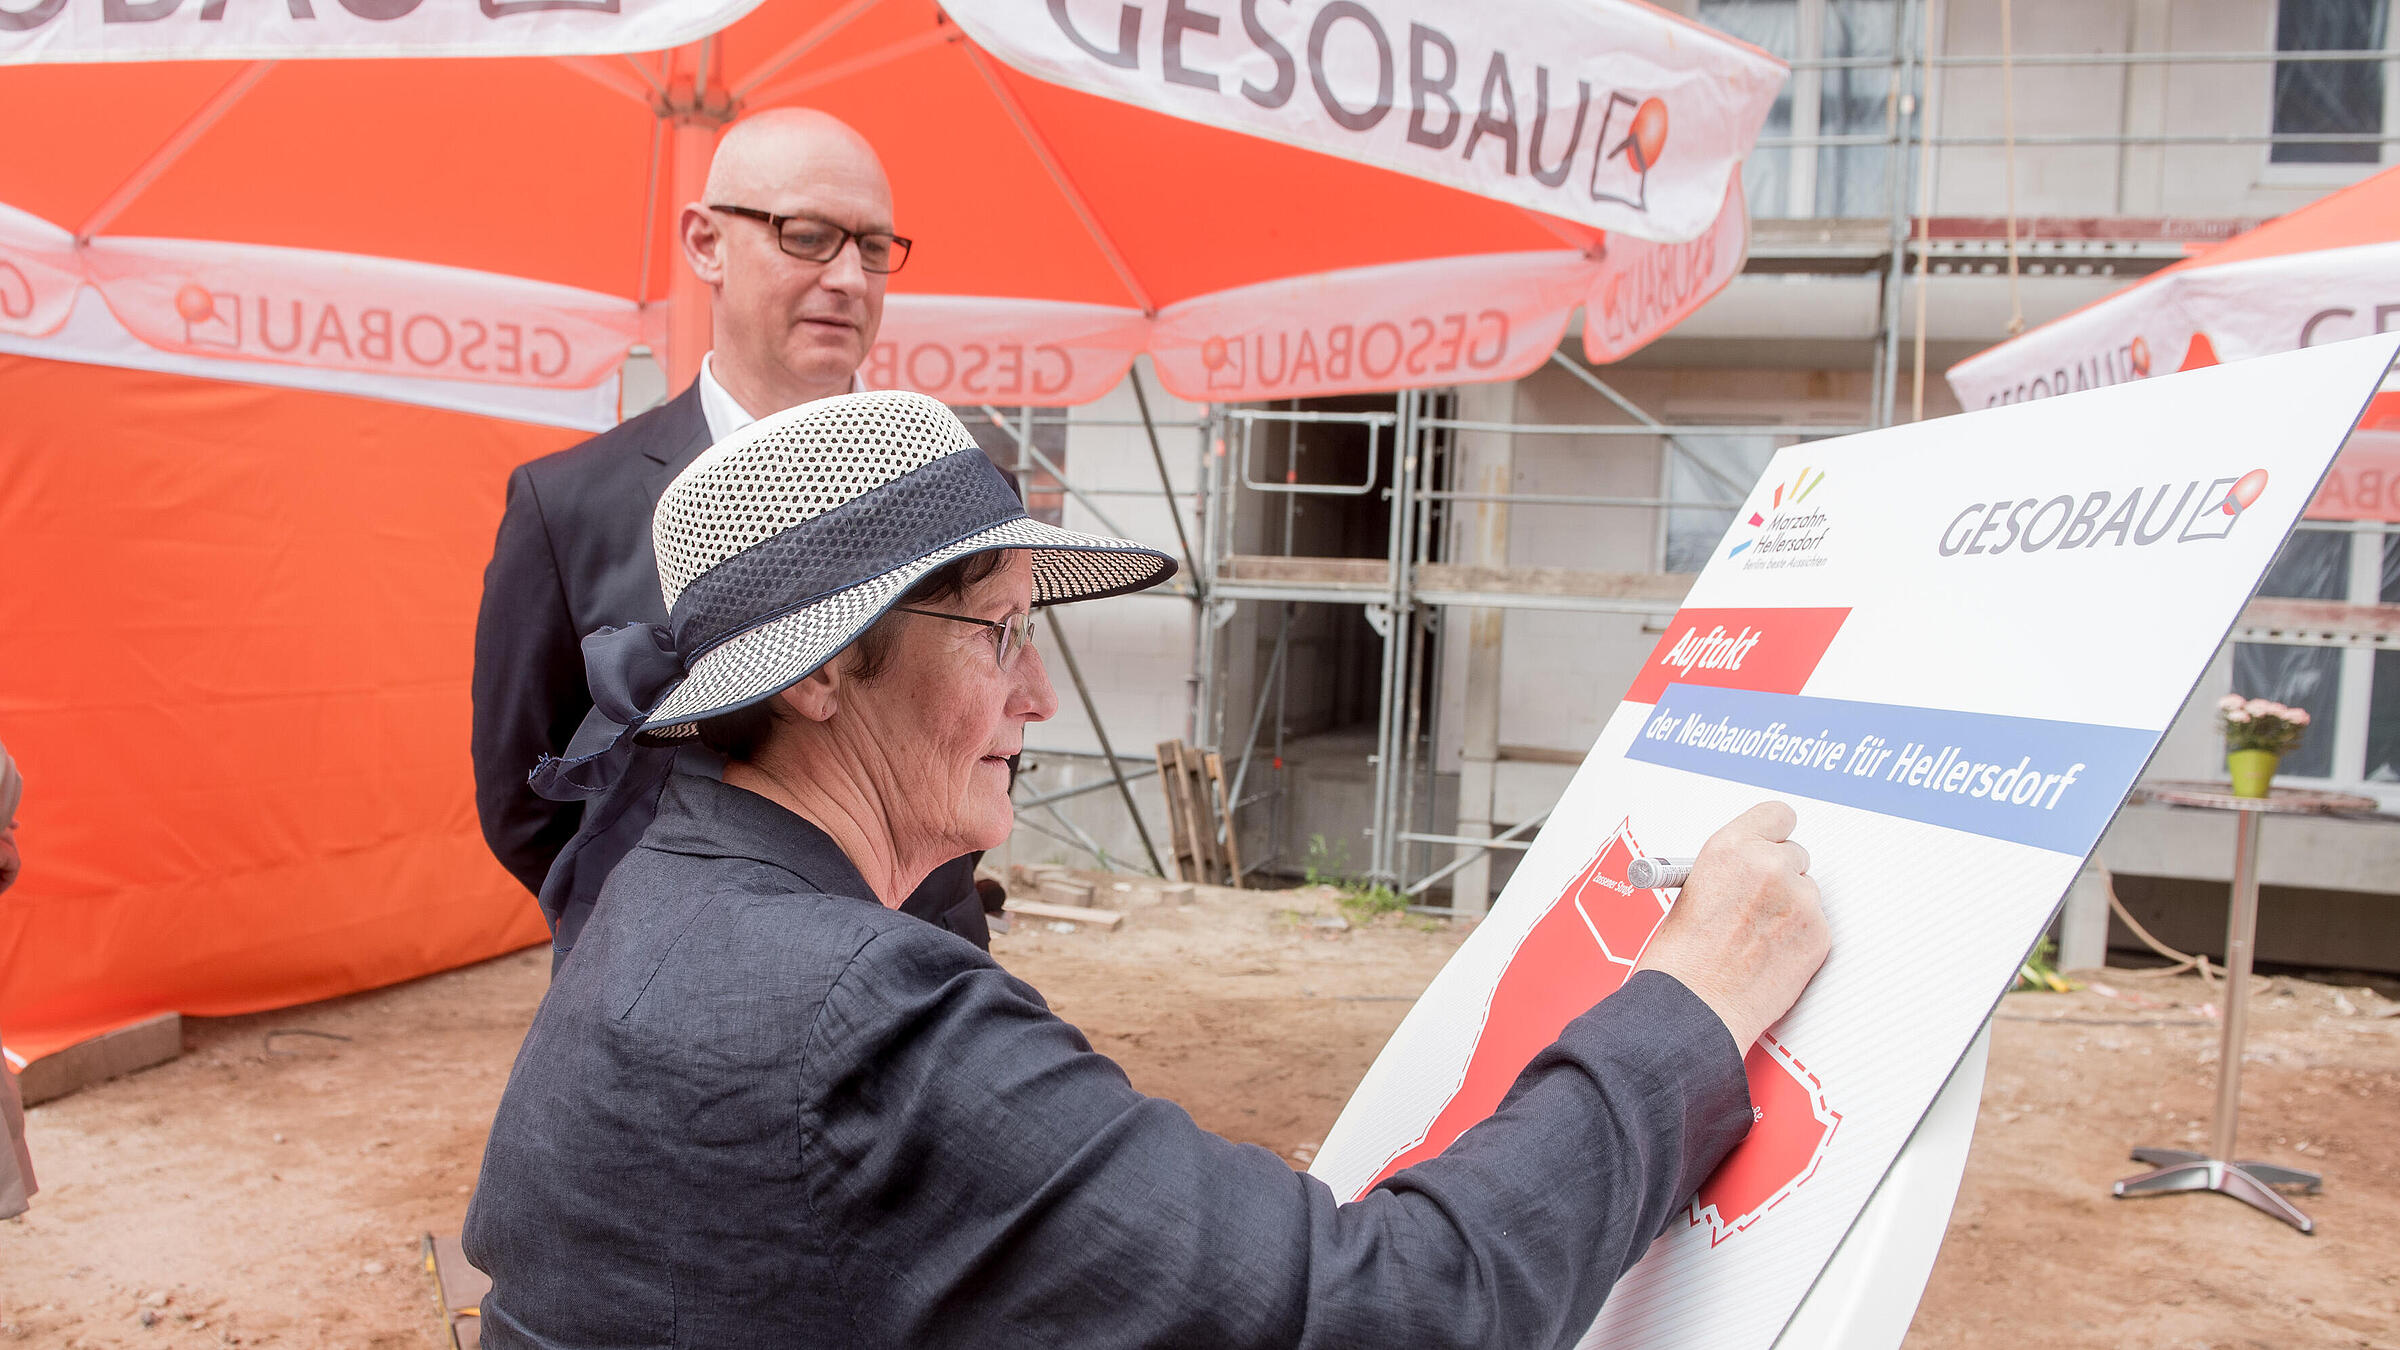  Dagmar Pohle, ehem. Bezirksbürgermeisterin von Marzahn-Hellersdorf, signiert die "Neubauoffensive der GESOBAU für Hellersdorf"